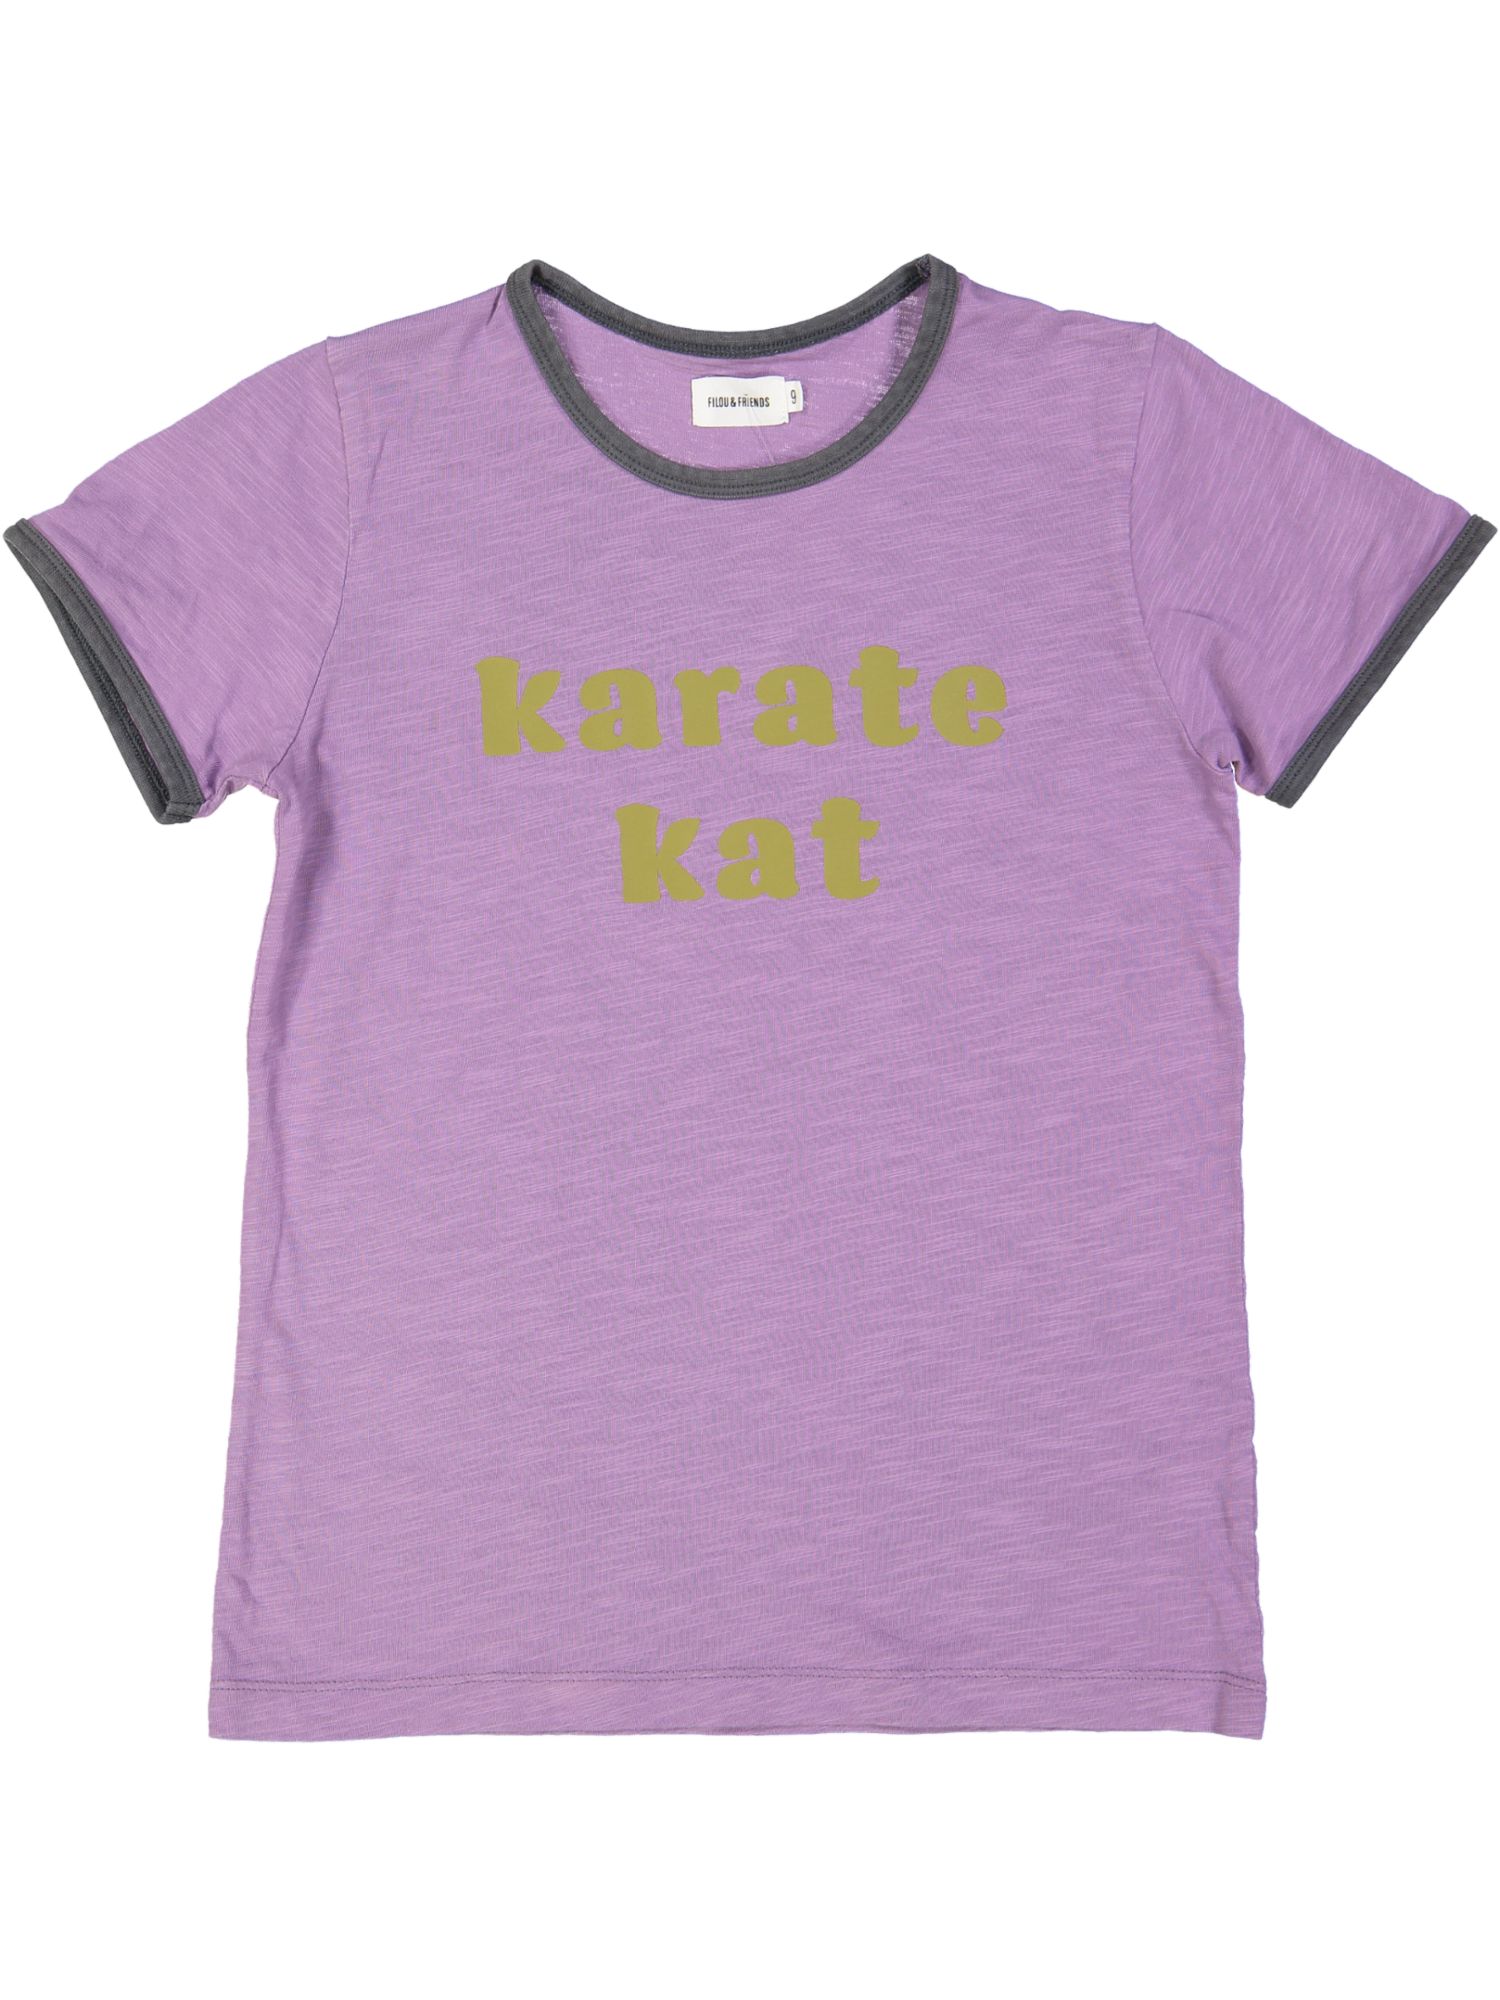 t-shirt paars karate kat 09j